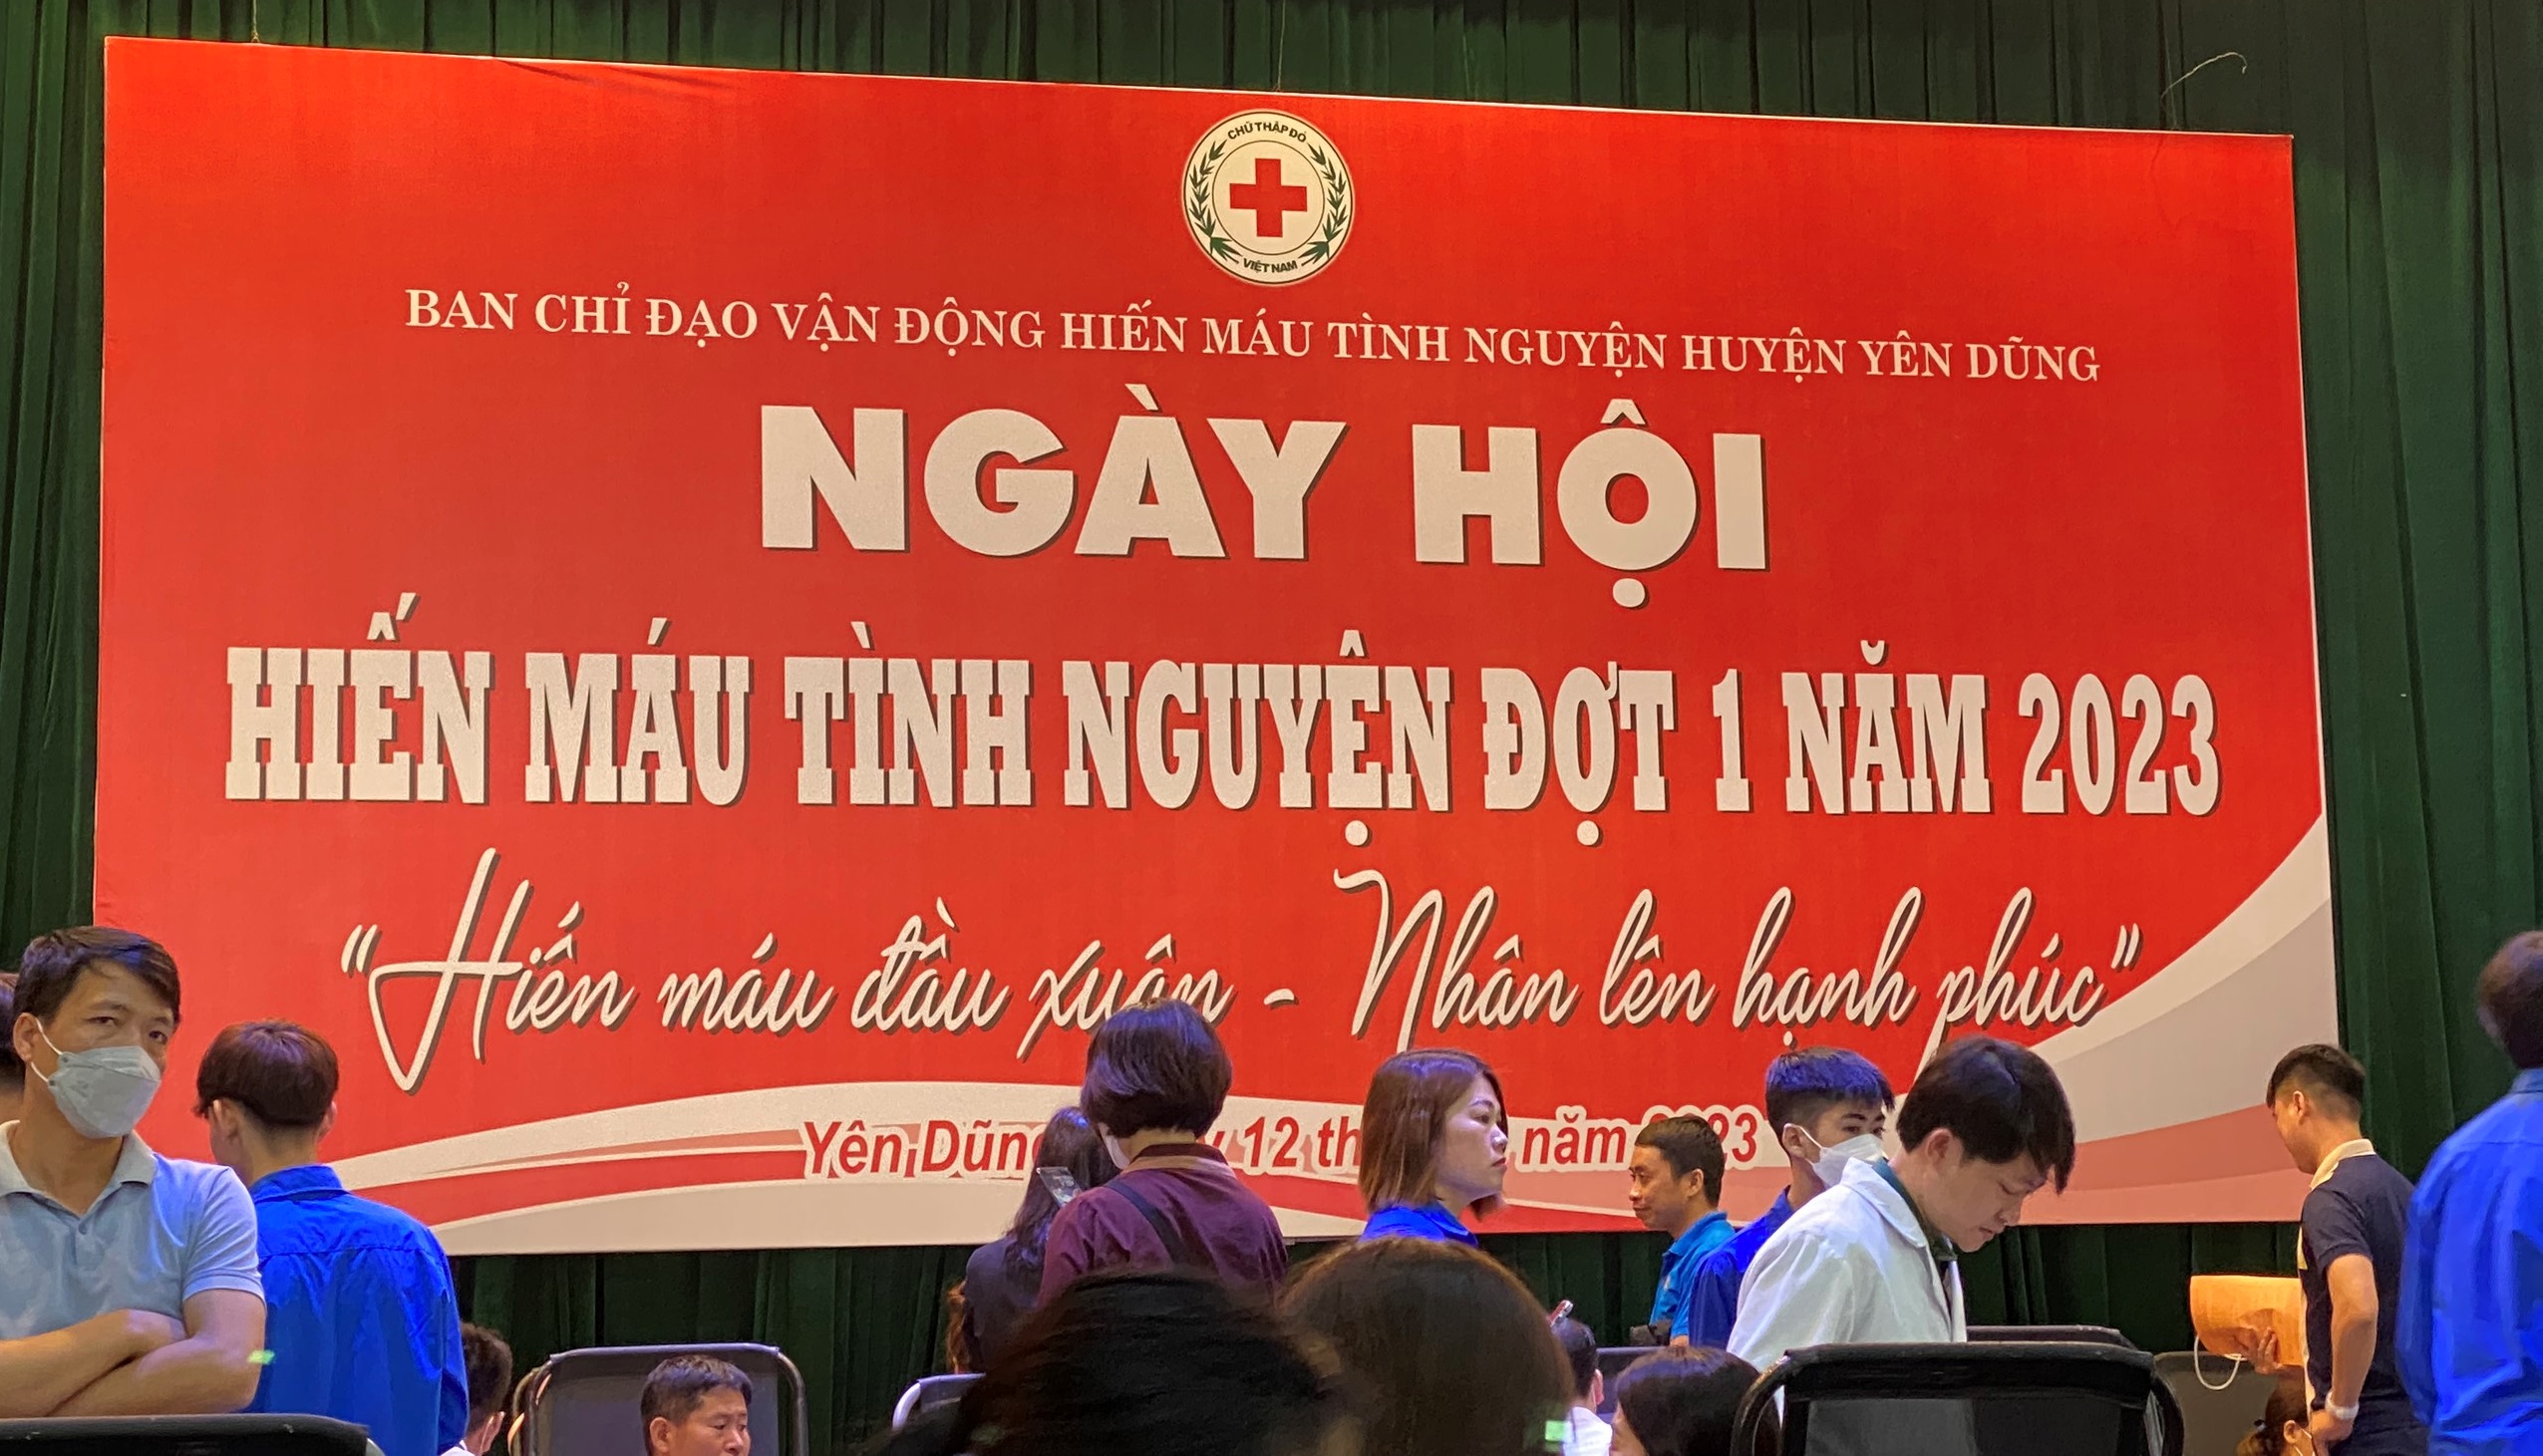 Chi cục THADS huyện Yên Dũng: Công chức, người lao động tích cực tham gia ngày hội hiến máu tình nguyện Đợt 1 năm 2023